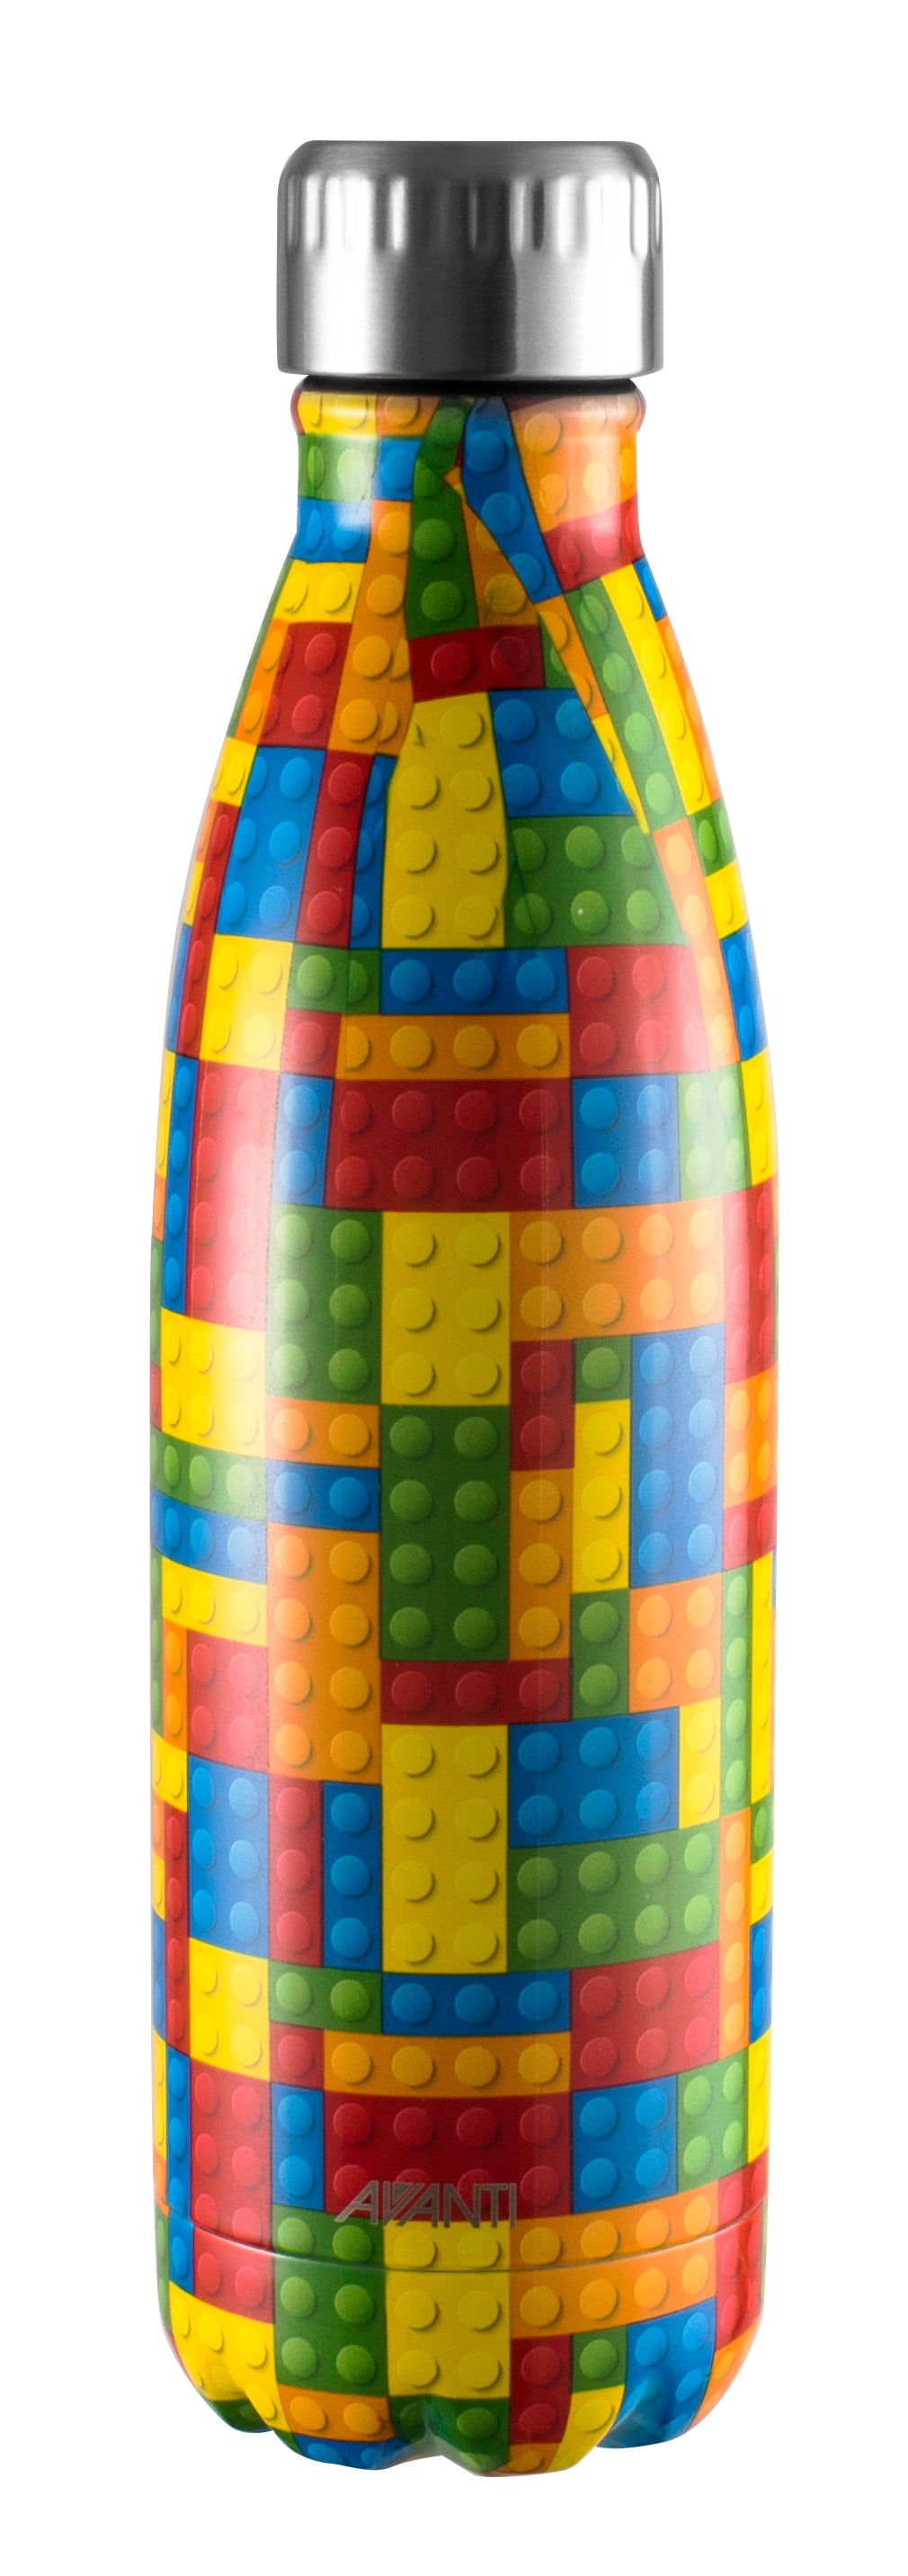 Mill & Hide - Sheldon & Hammond - Avanti Drink Bottle 500ml - Building Blocks